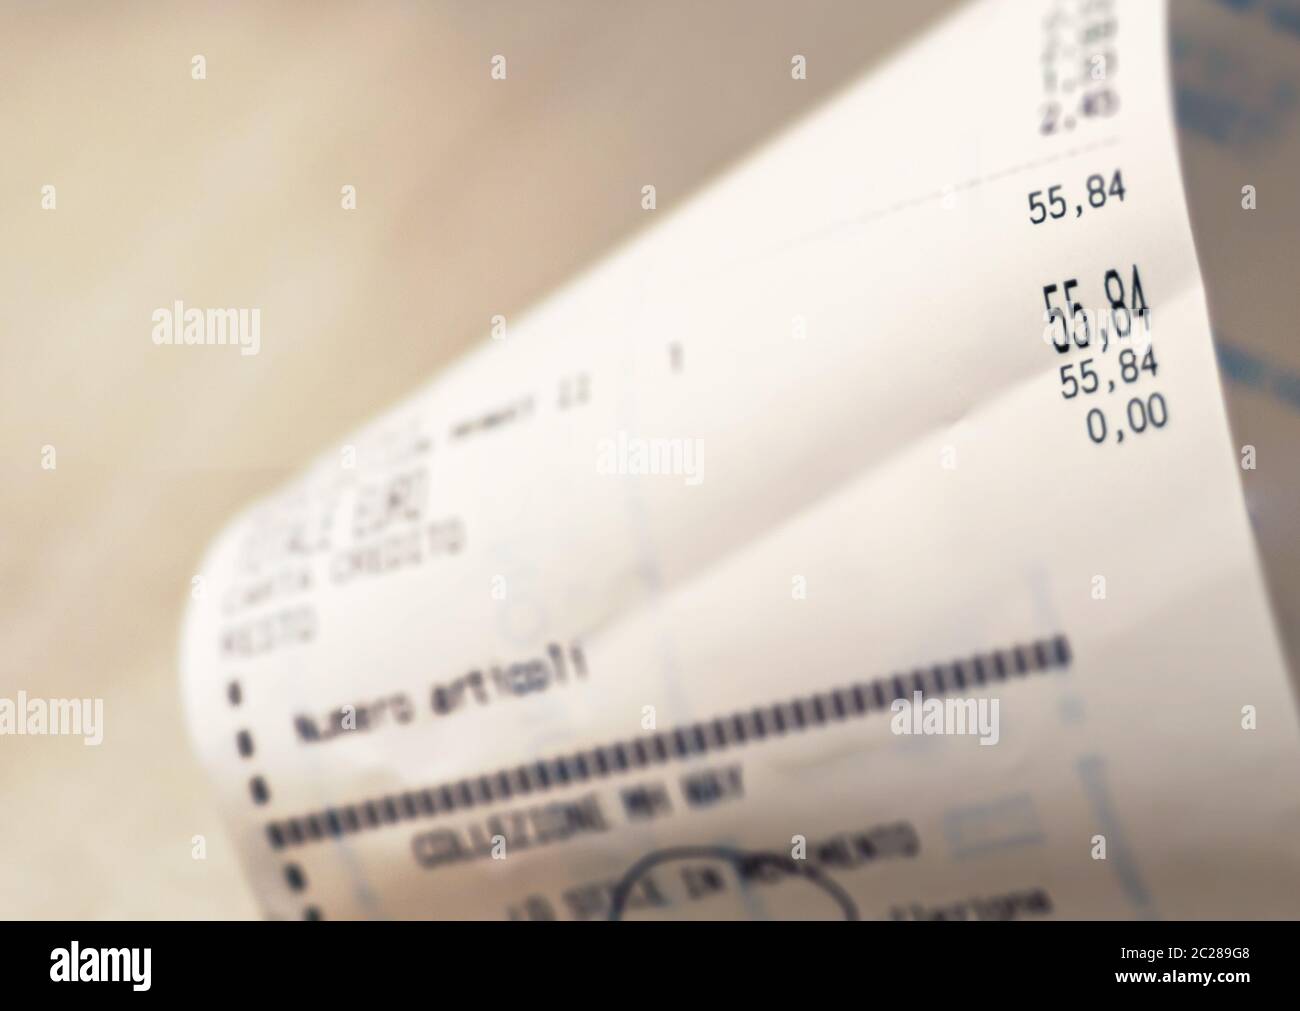 Vue rapprochée du montant total des achats d'épicerie dans un supermarché imprimé sur un reçu papier Banque D'Images